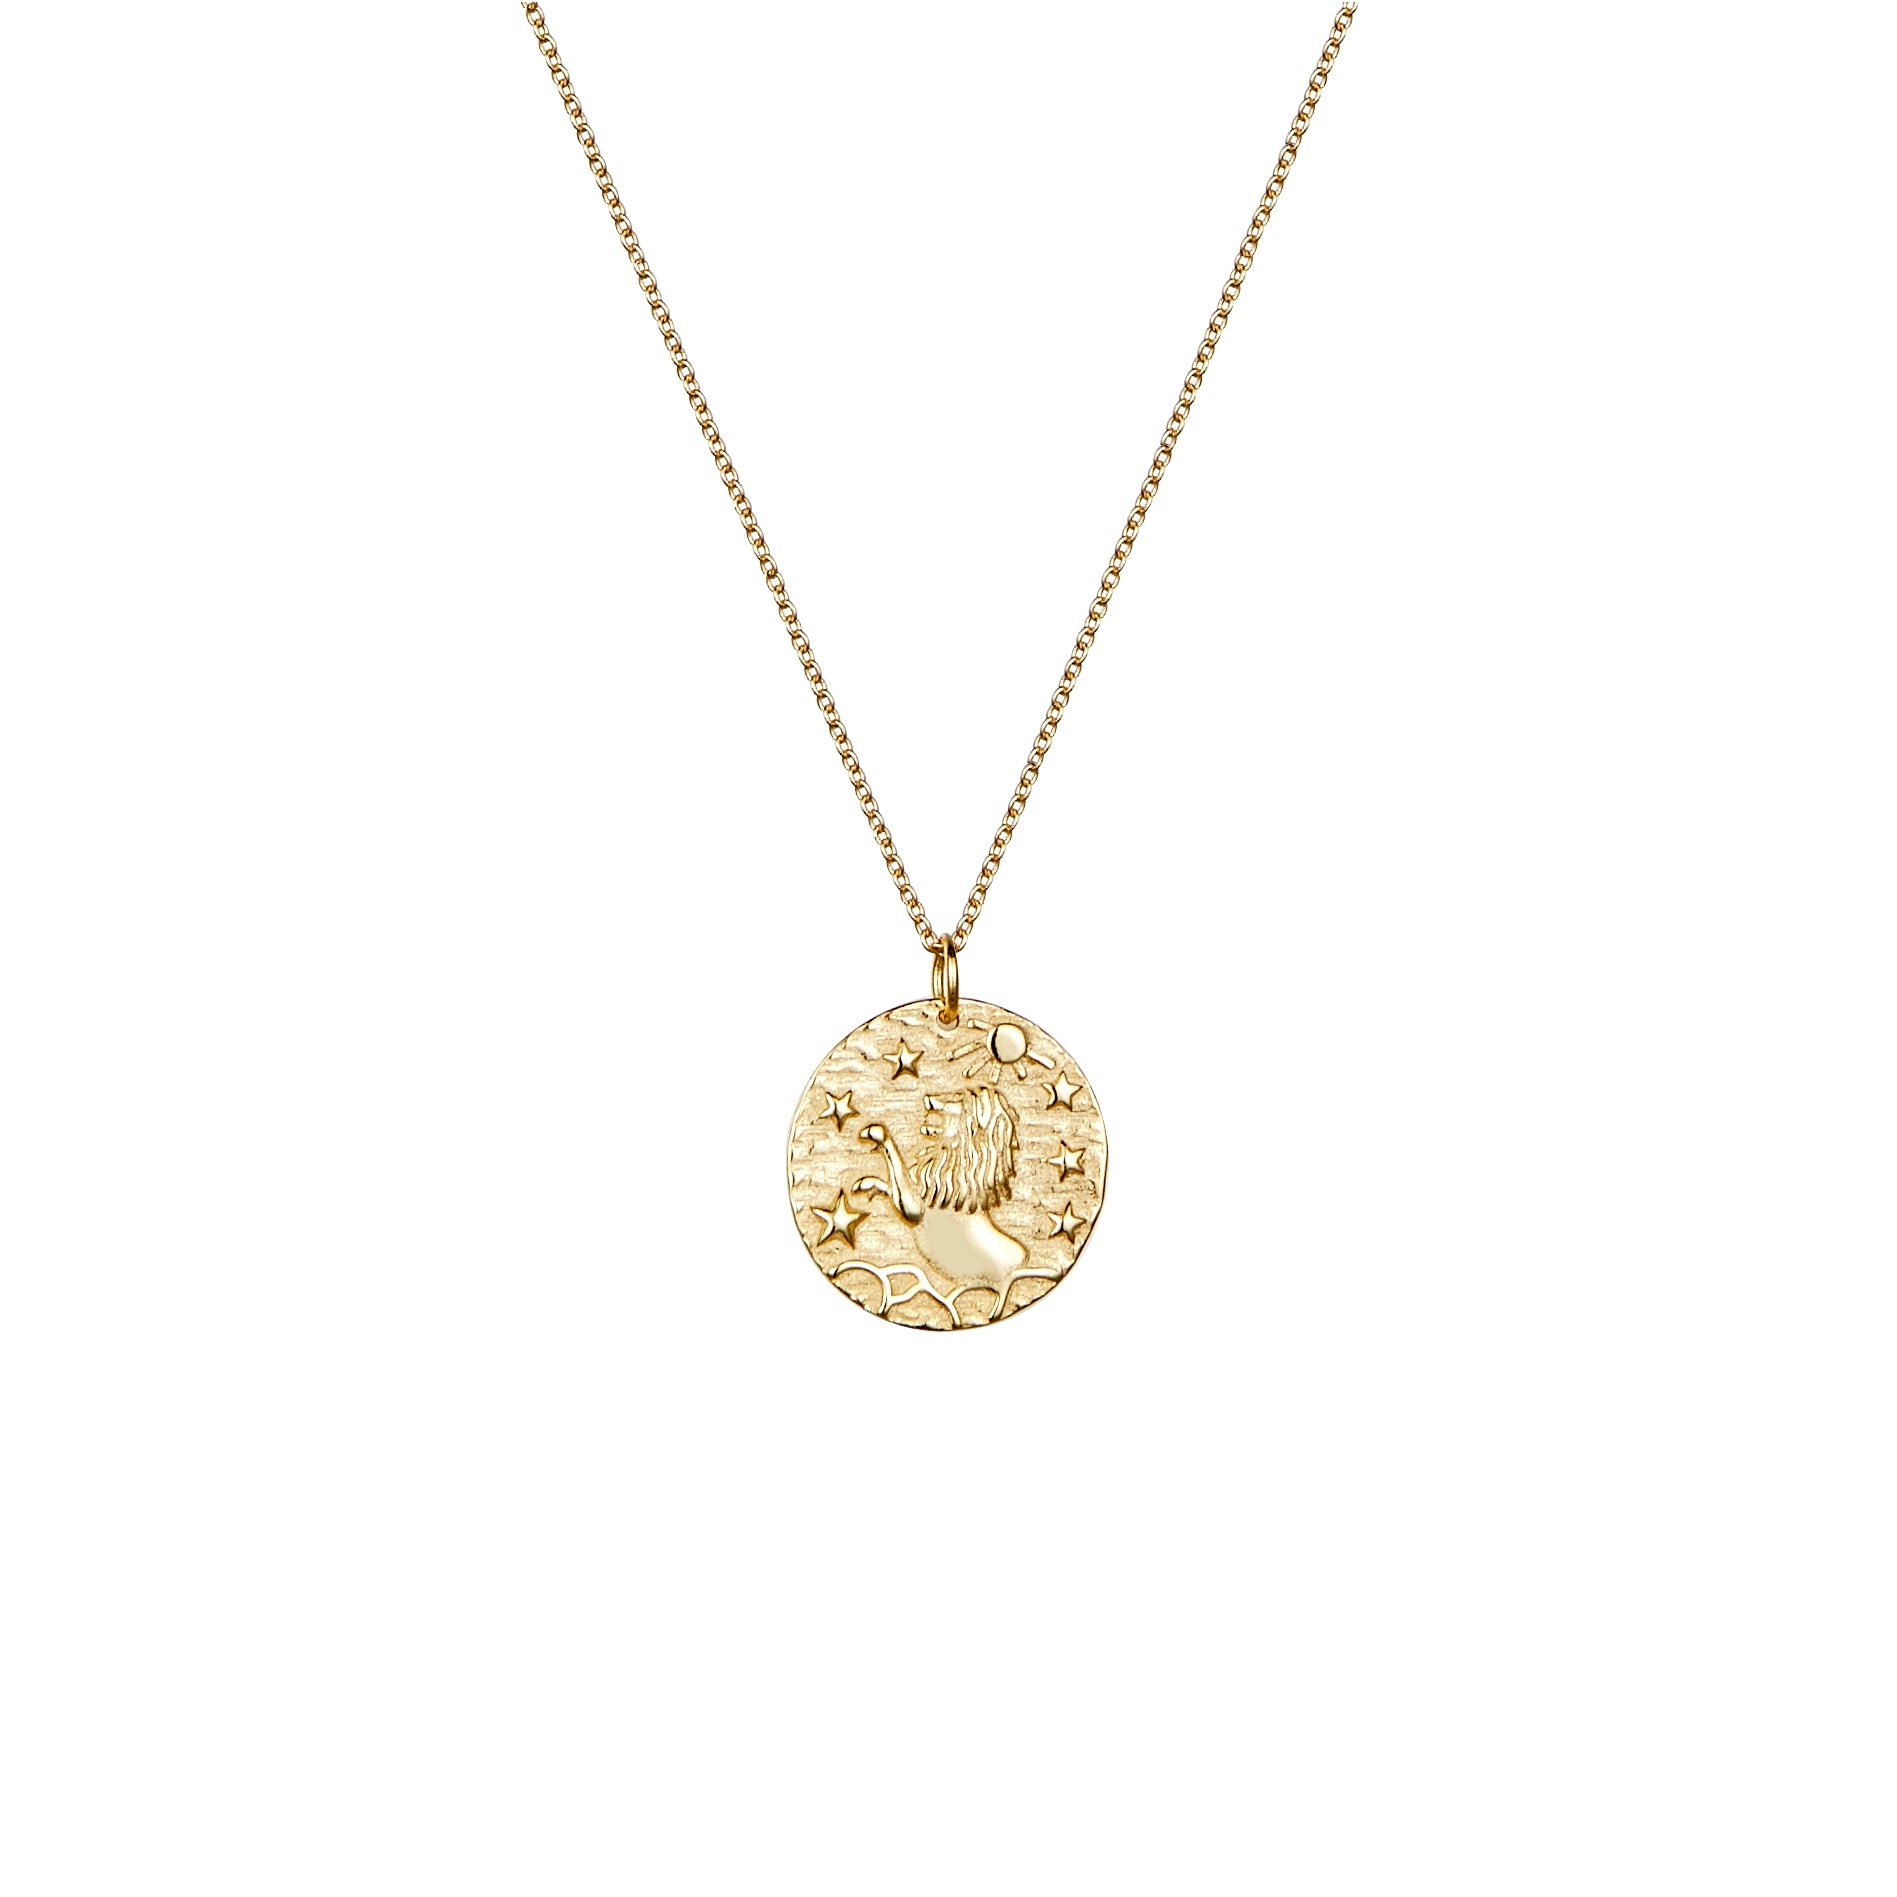 Leo rose gold necklace 